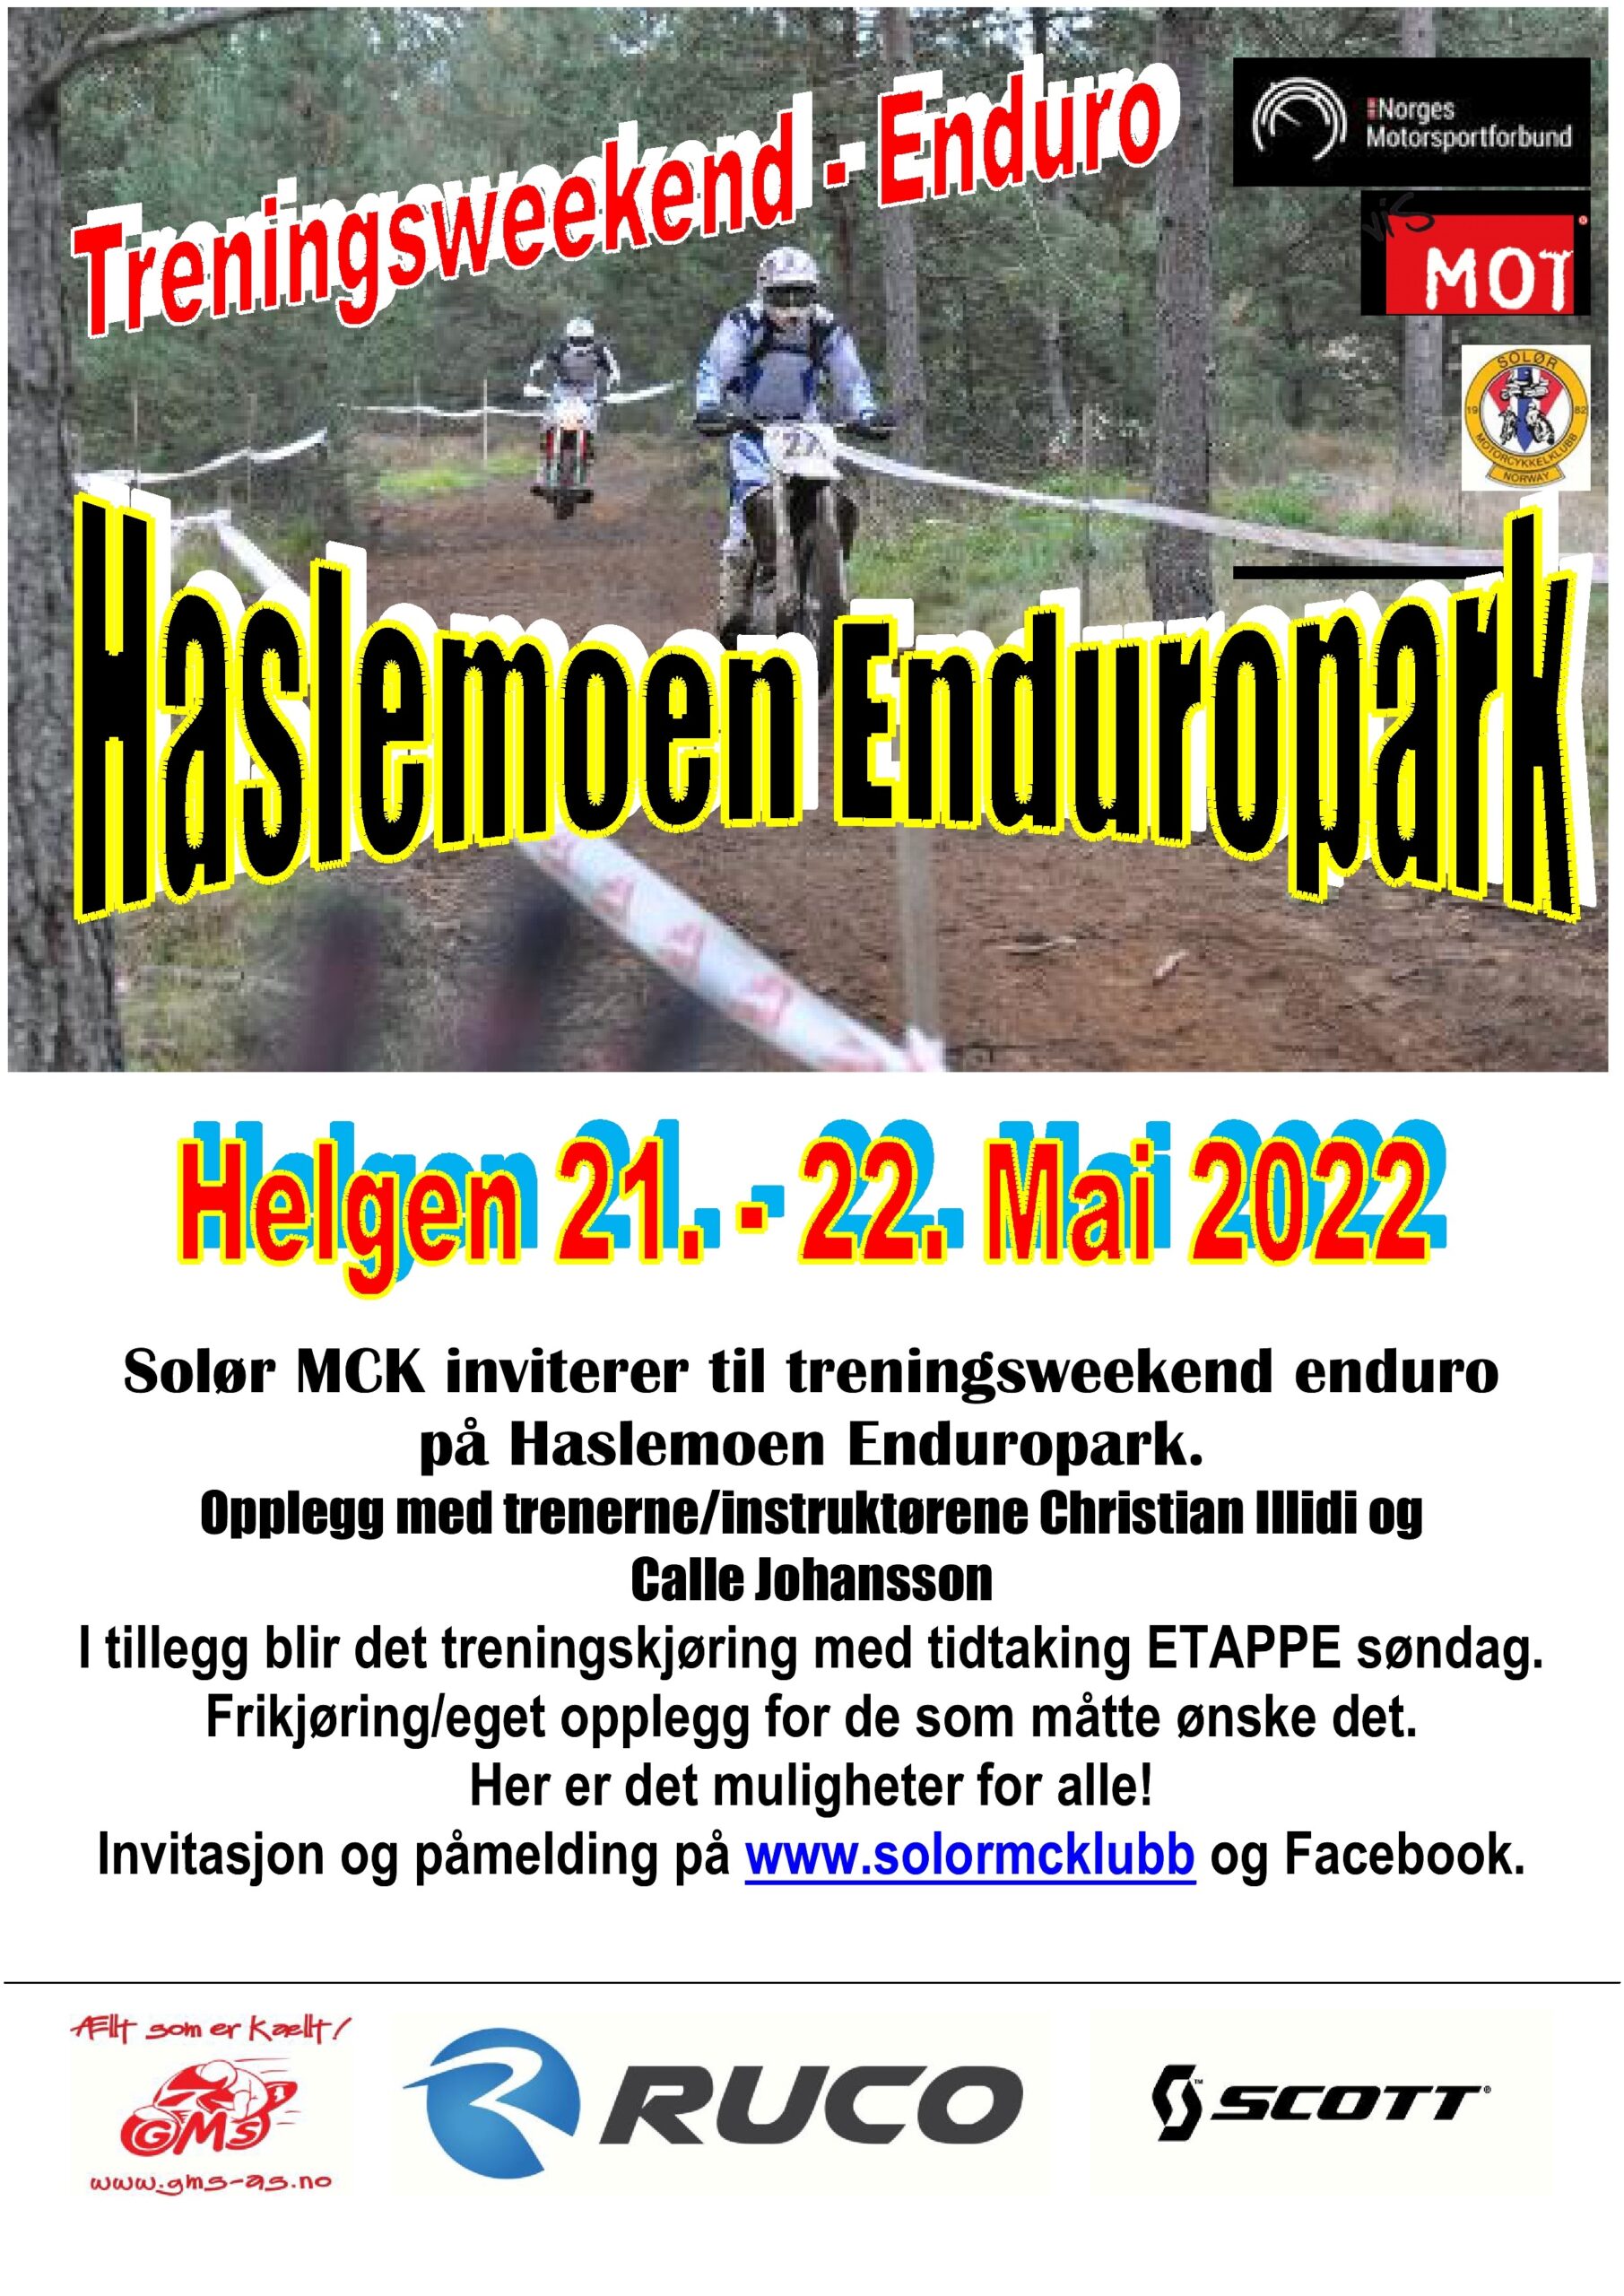 0 - POSTER treningsweekend enduro - Haslemoen Enduropark - mai 2022